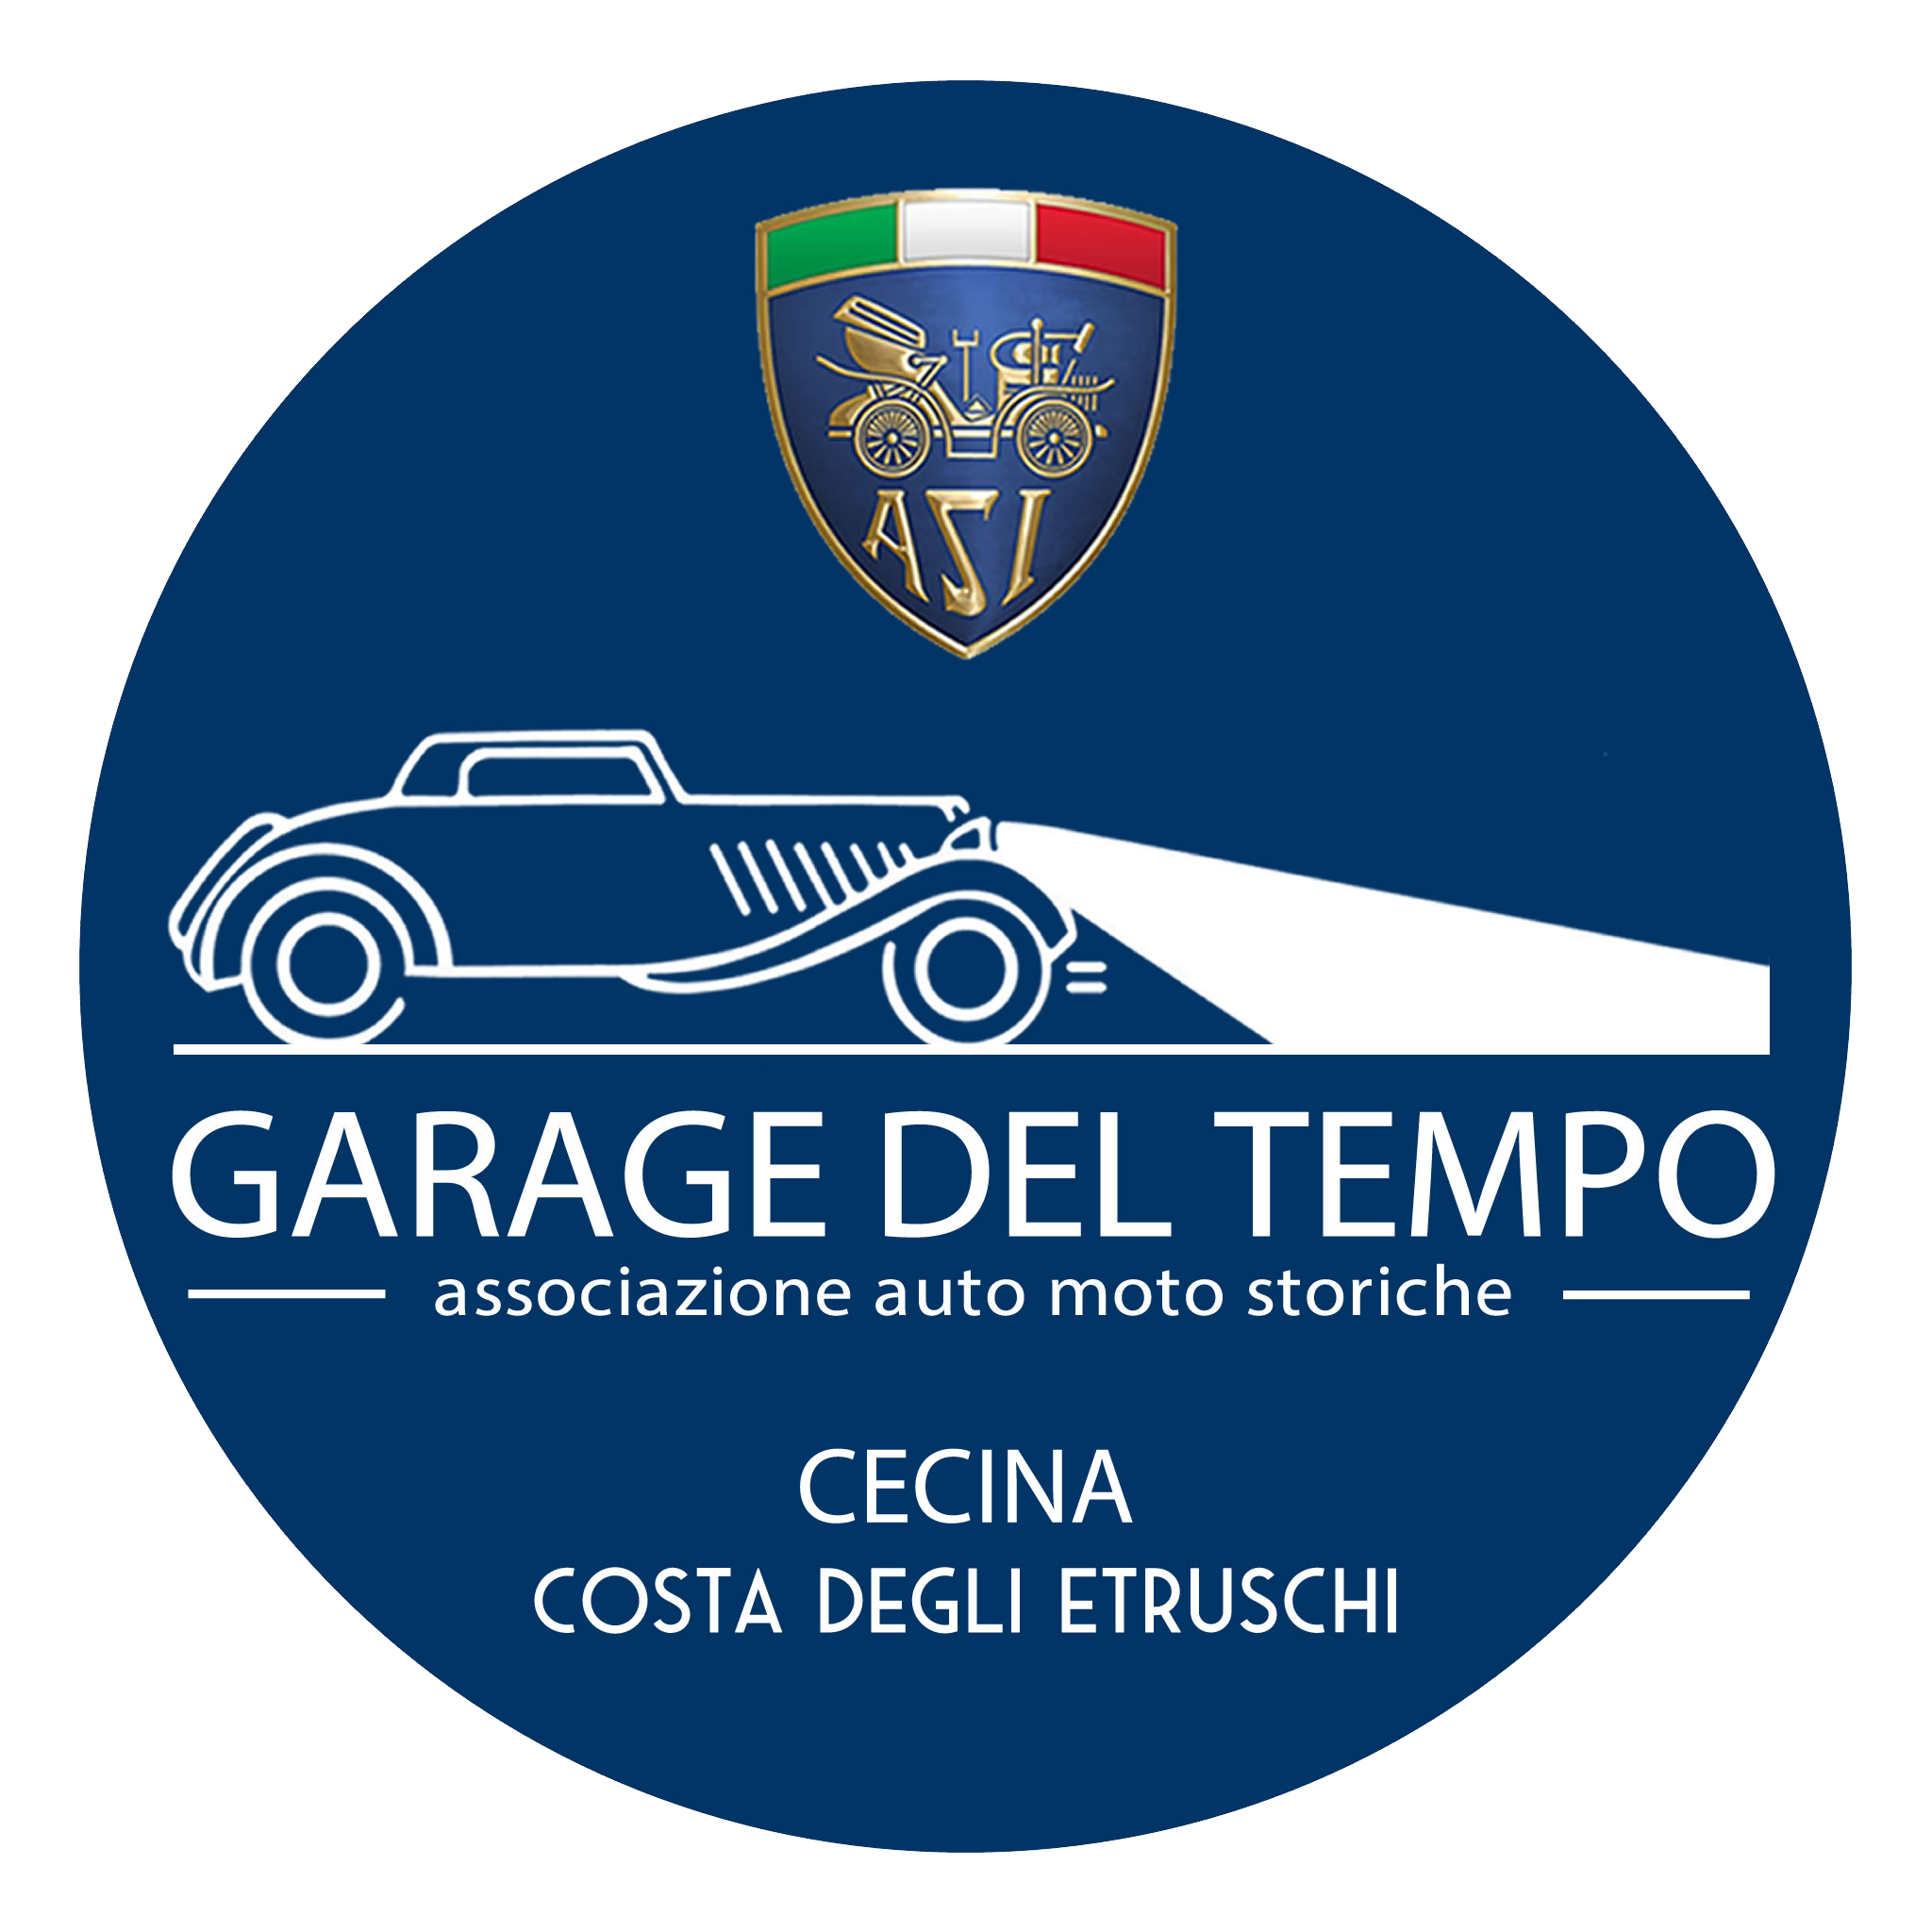 Garage del Tempo – Associazione Auto Moto Storiche Cecina – Costa degli Etruschi